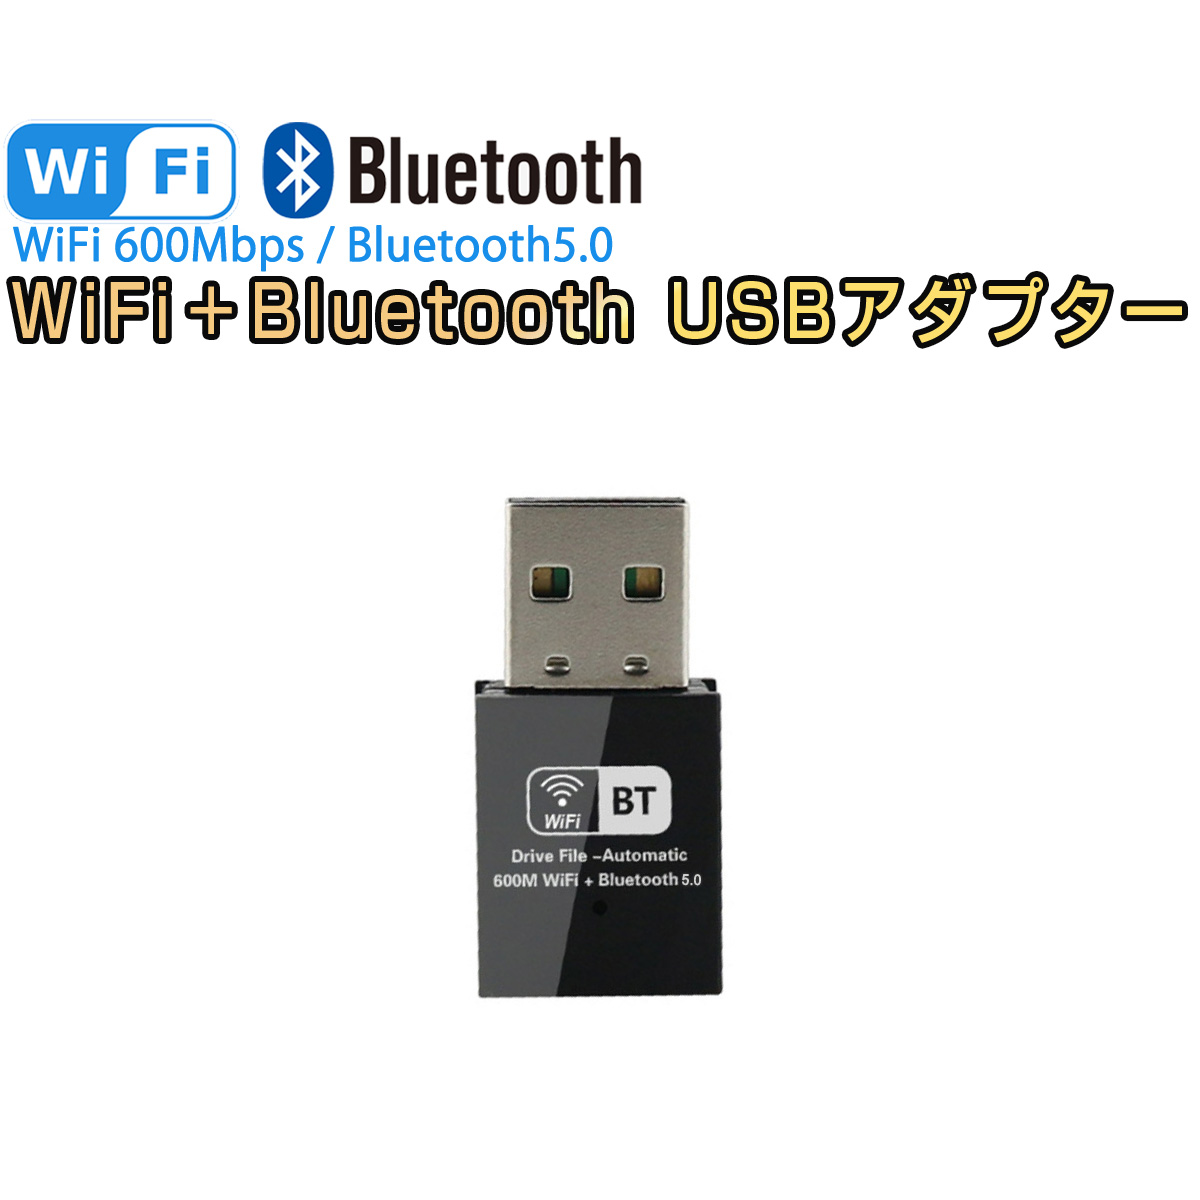 卸売B2B WiFi Bluetooth アダプター USB 無線LAN Wi-Fiレシーバー 子機 デュアルバンド 2.4GHz 150Mbps/5GHz 433Mbps対応 ブルートゥース5.0 Windows 対応 1ヶ月保証 K&M